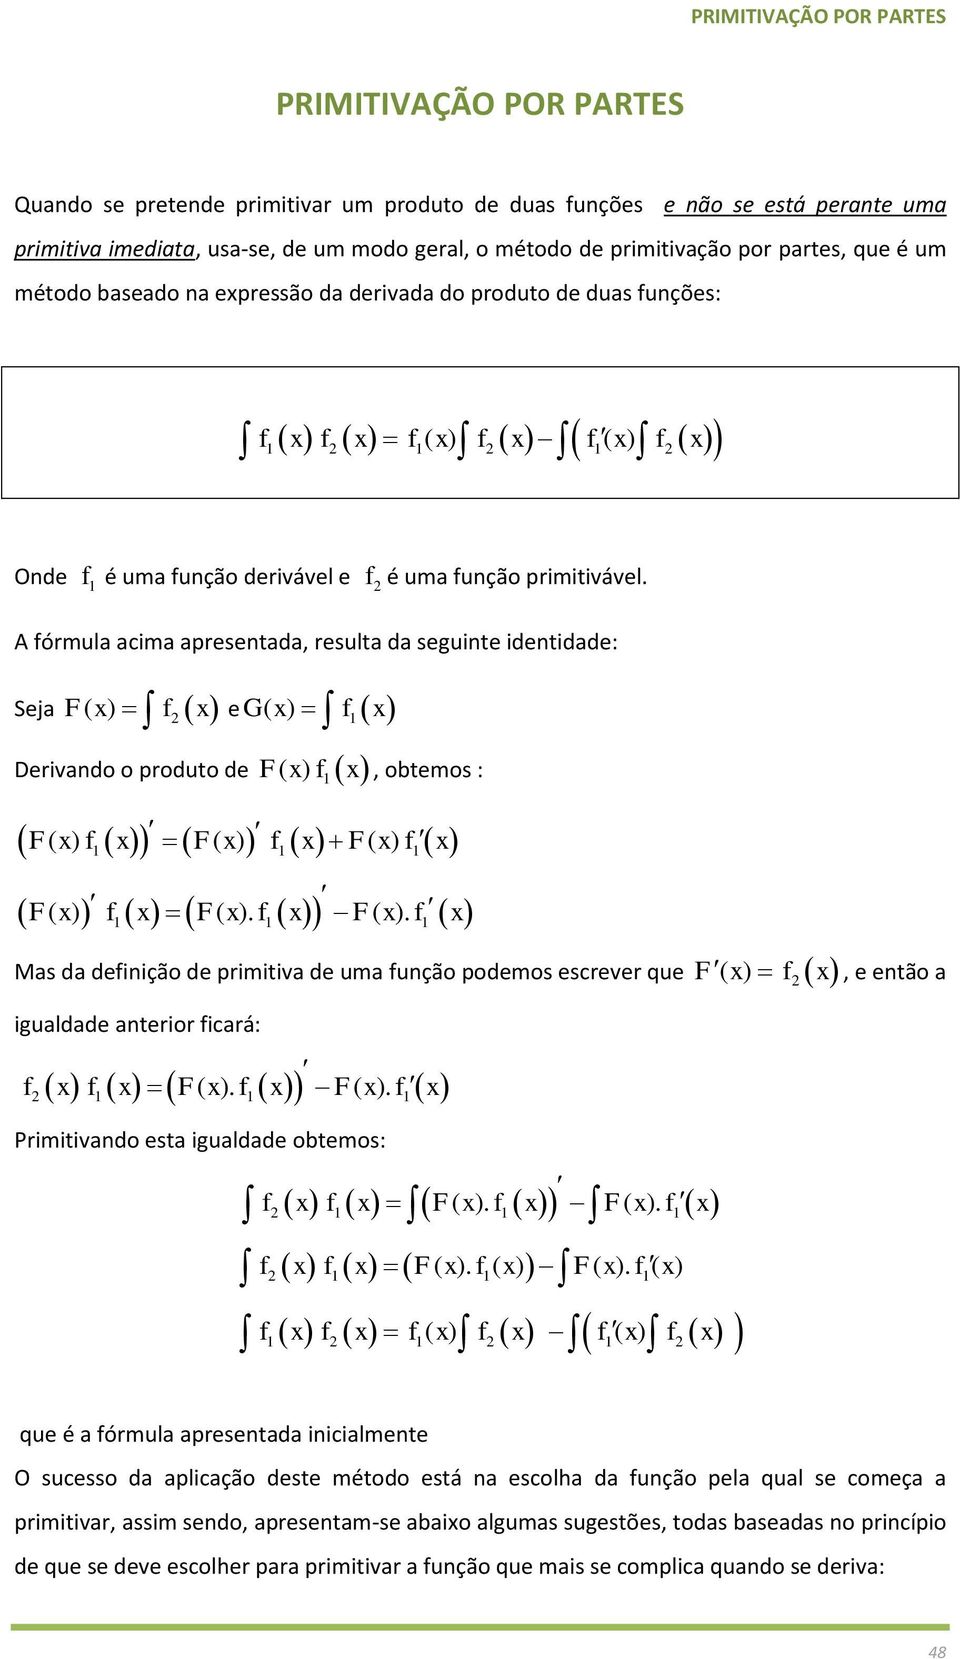 A órmula acima apretada, resulta da seguinte identidade: Seja eg( ) F( ) Derivando o produto de F( ), obtemos : F( ) F( ) F( ) F( ) F( ). F( ). Mas da deinição de primitiva de uma unção podemos escrever que F( ), e então a igualdade anterior icará: F F ( ).